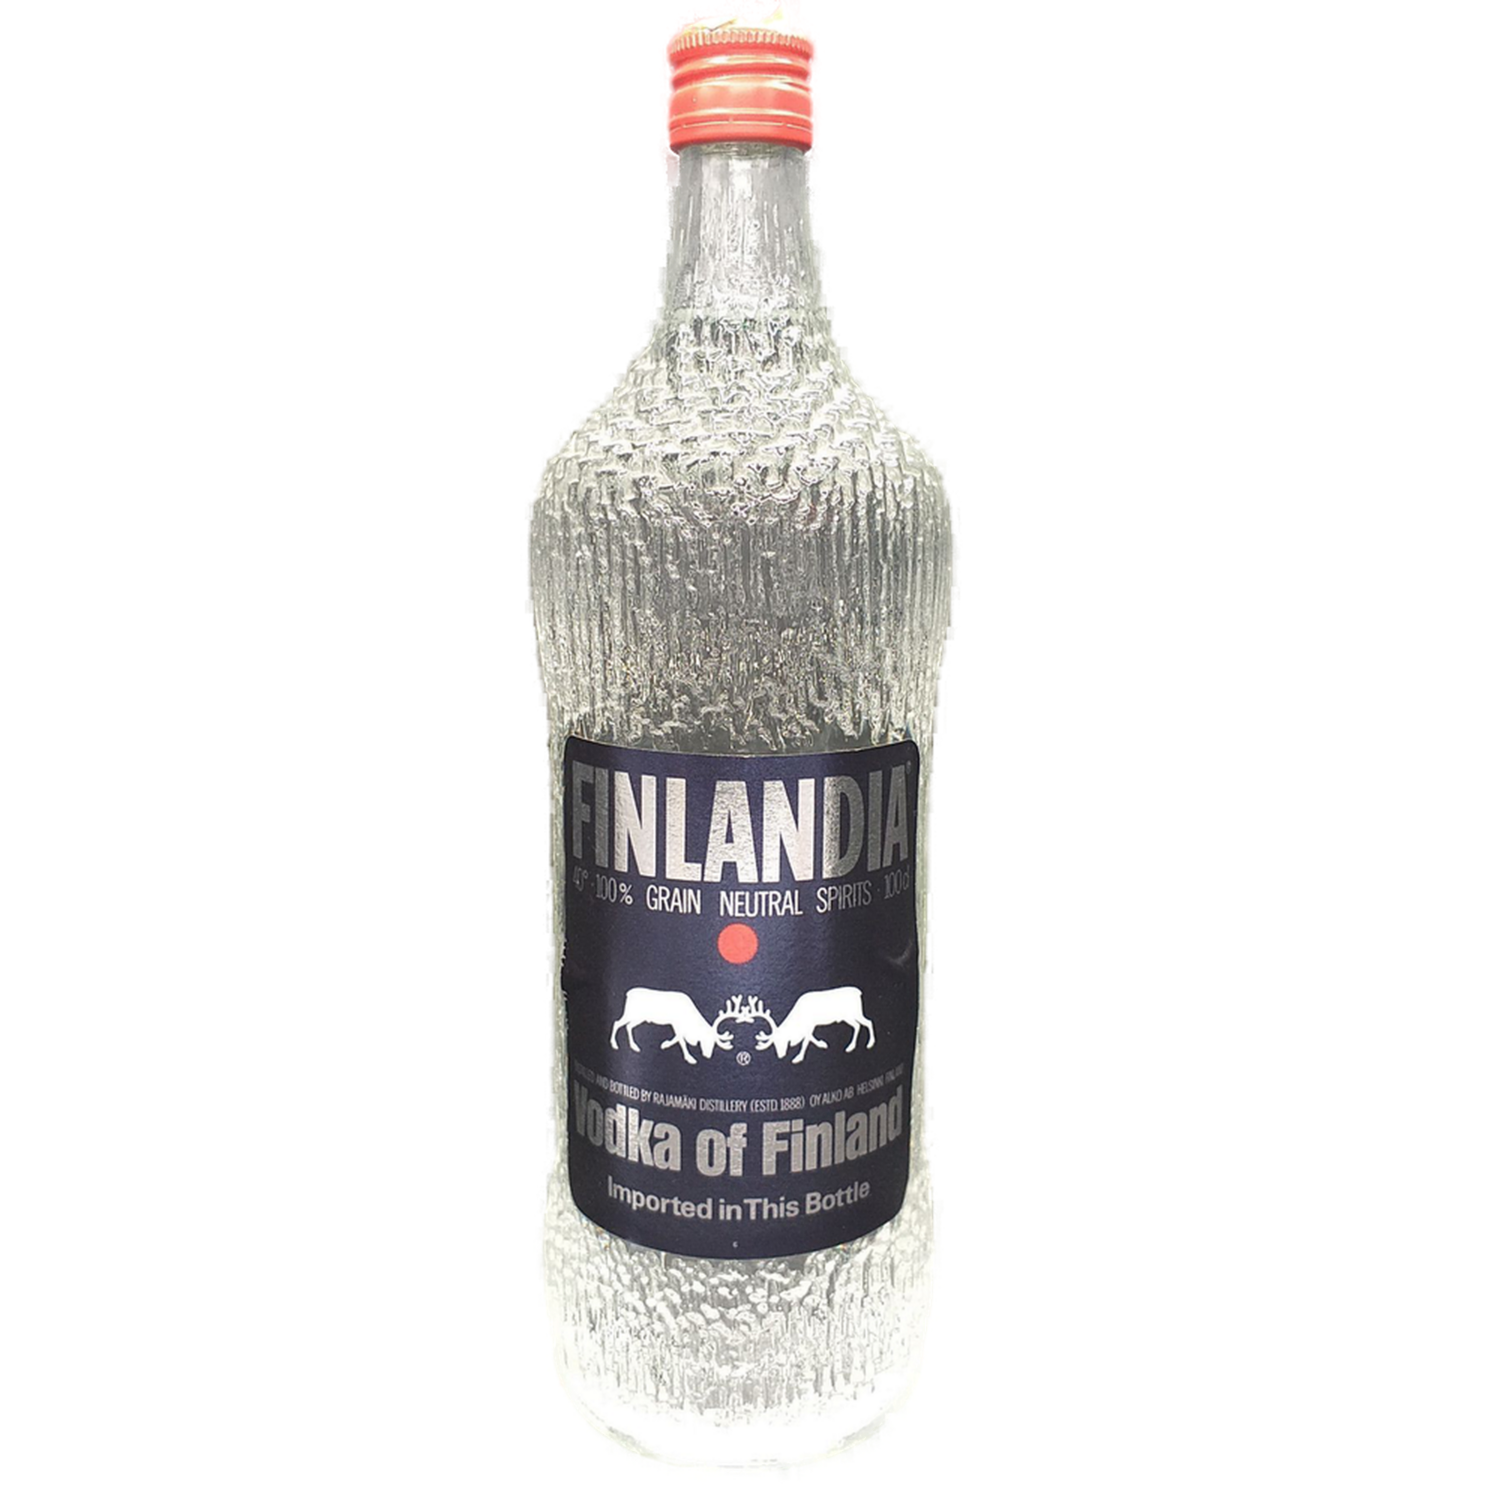 Finlandia Vodka of Finland 40% VOL. ältere Ausführung | Vodka